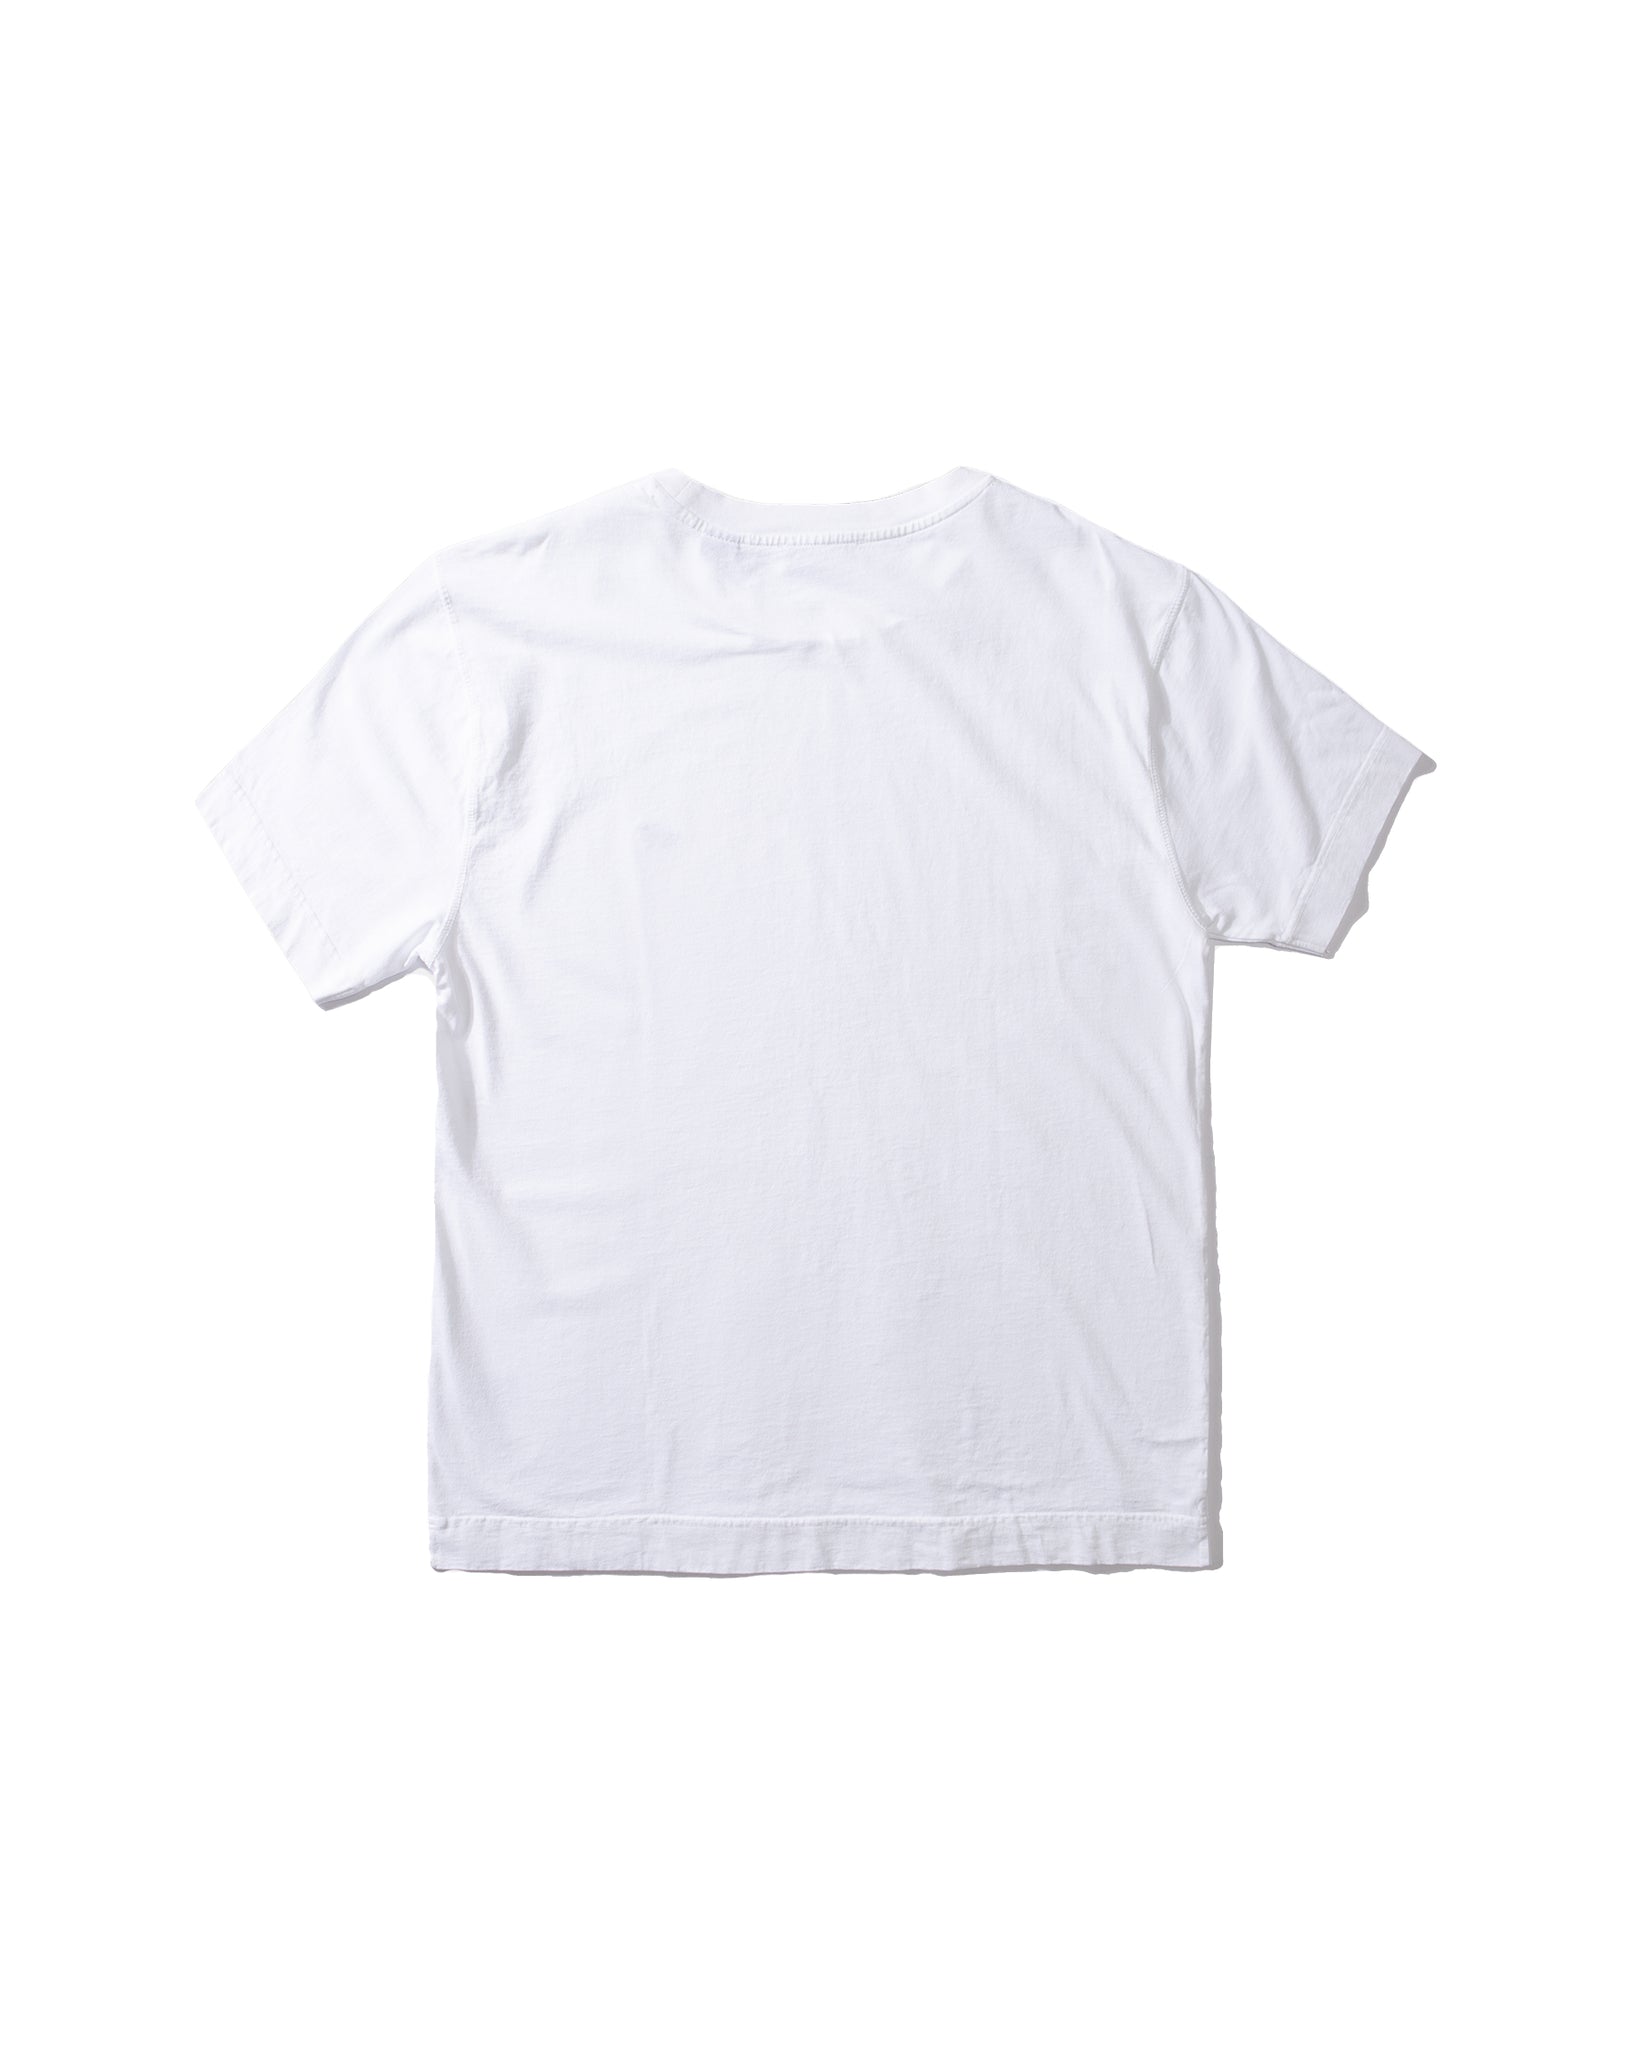 Duck Patch T-Shirt - Plain White